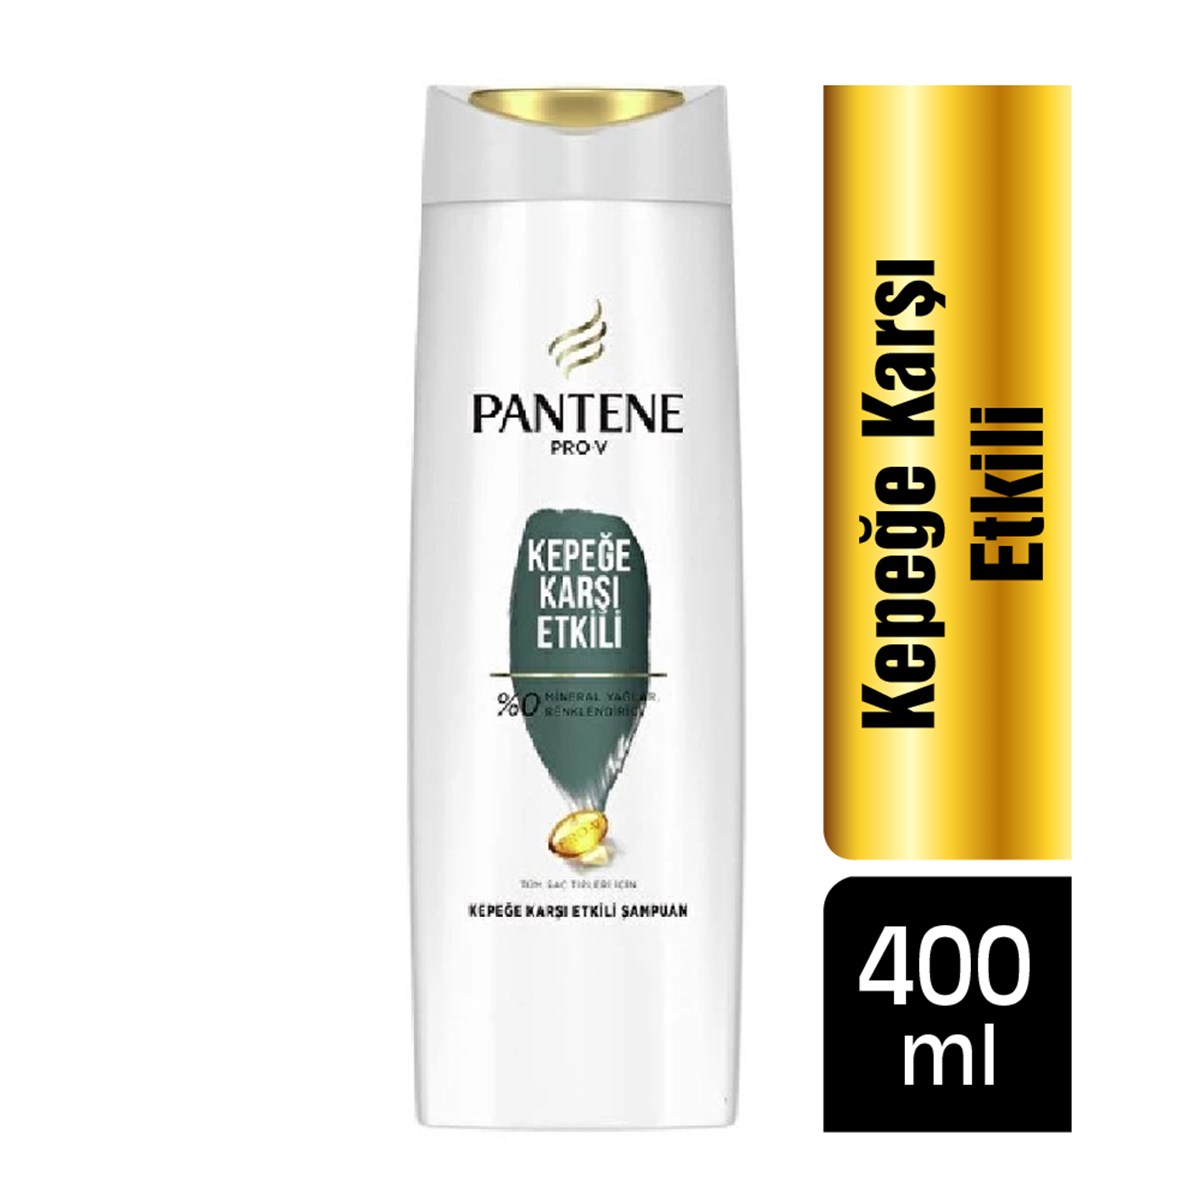 Pantene Şampuan Kepeğe Karşı Etkili Tüm Saç Tipleri 400ml - Platin